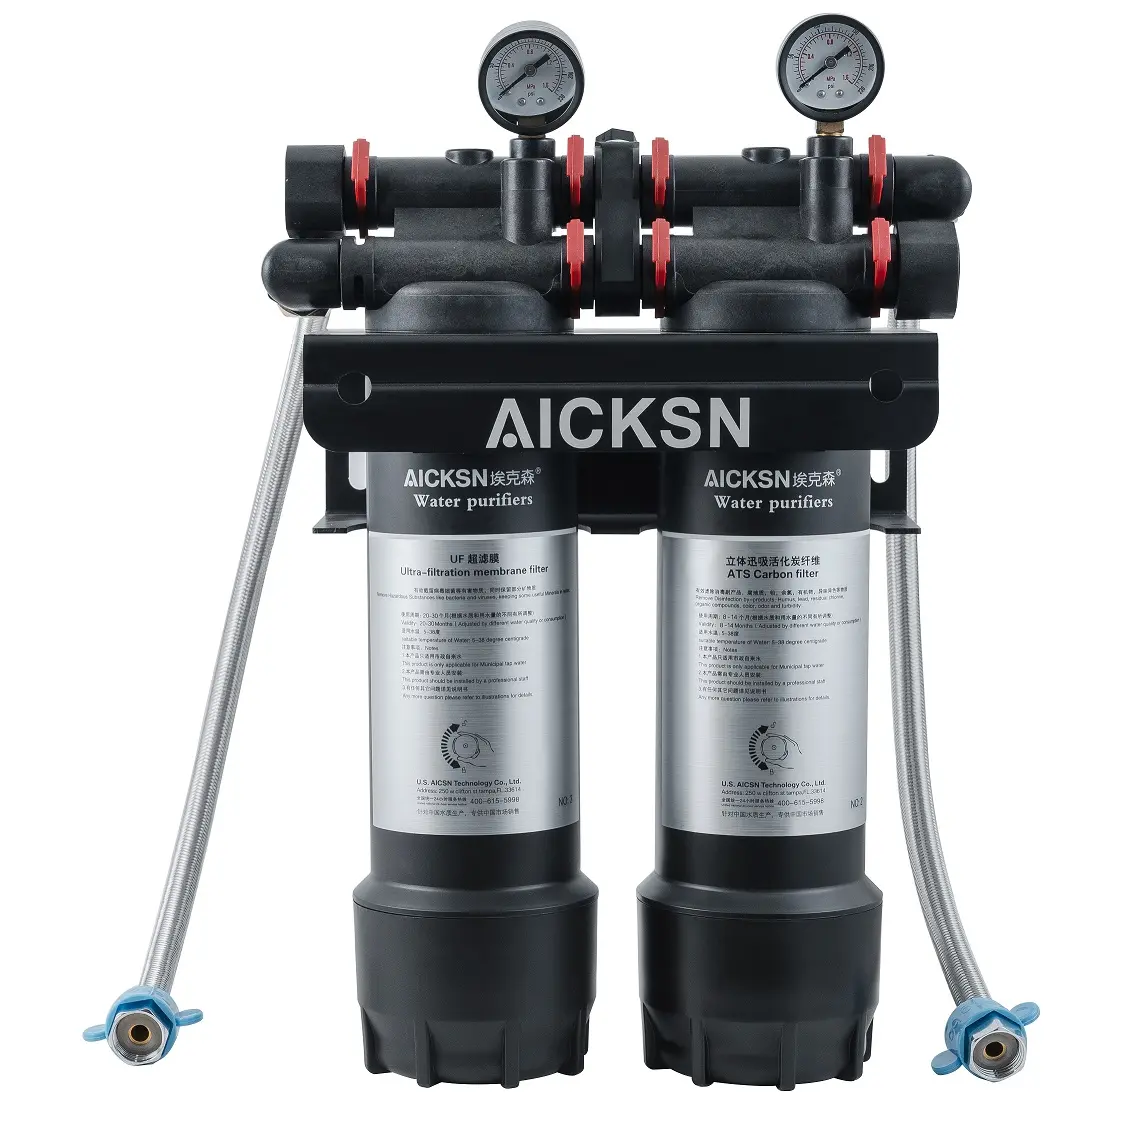 घरेलू उपयोग के लिए Aicksn 2 स्टेज वॉटर फिल्टर ACF वॉटर फिल्टर, जल शोधन प्रणालियों के लिए सक्रिय कार्बन फिल्टर